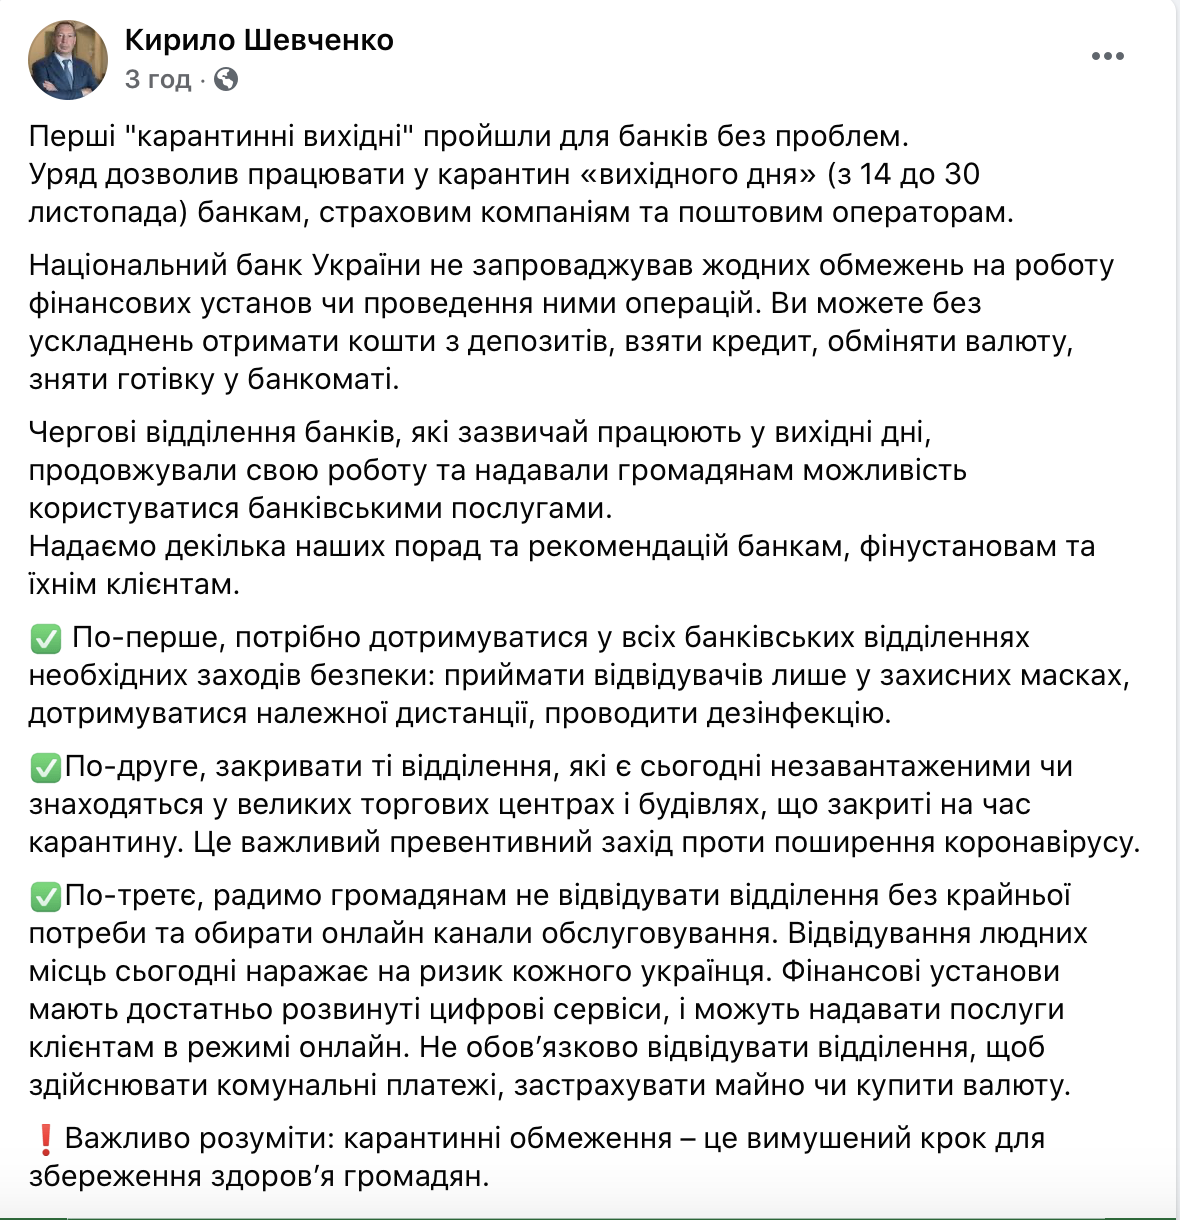 Шевченко сказал, какие отделения банков рекомендовано закрыть